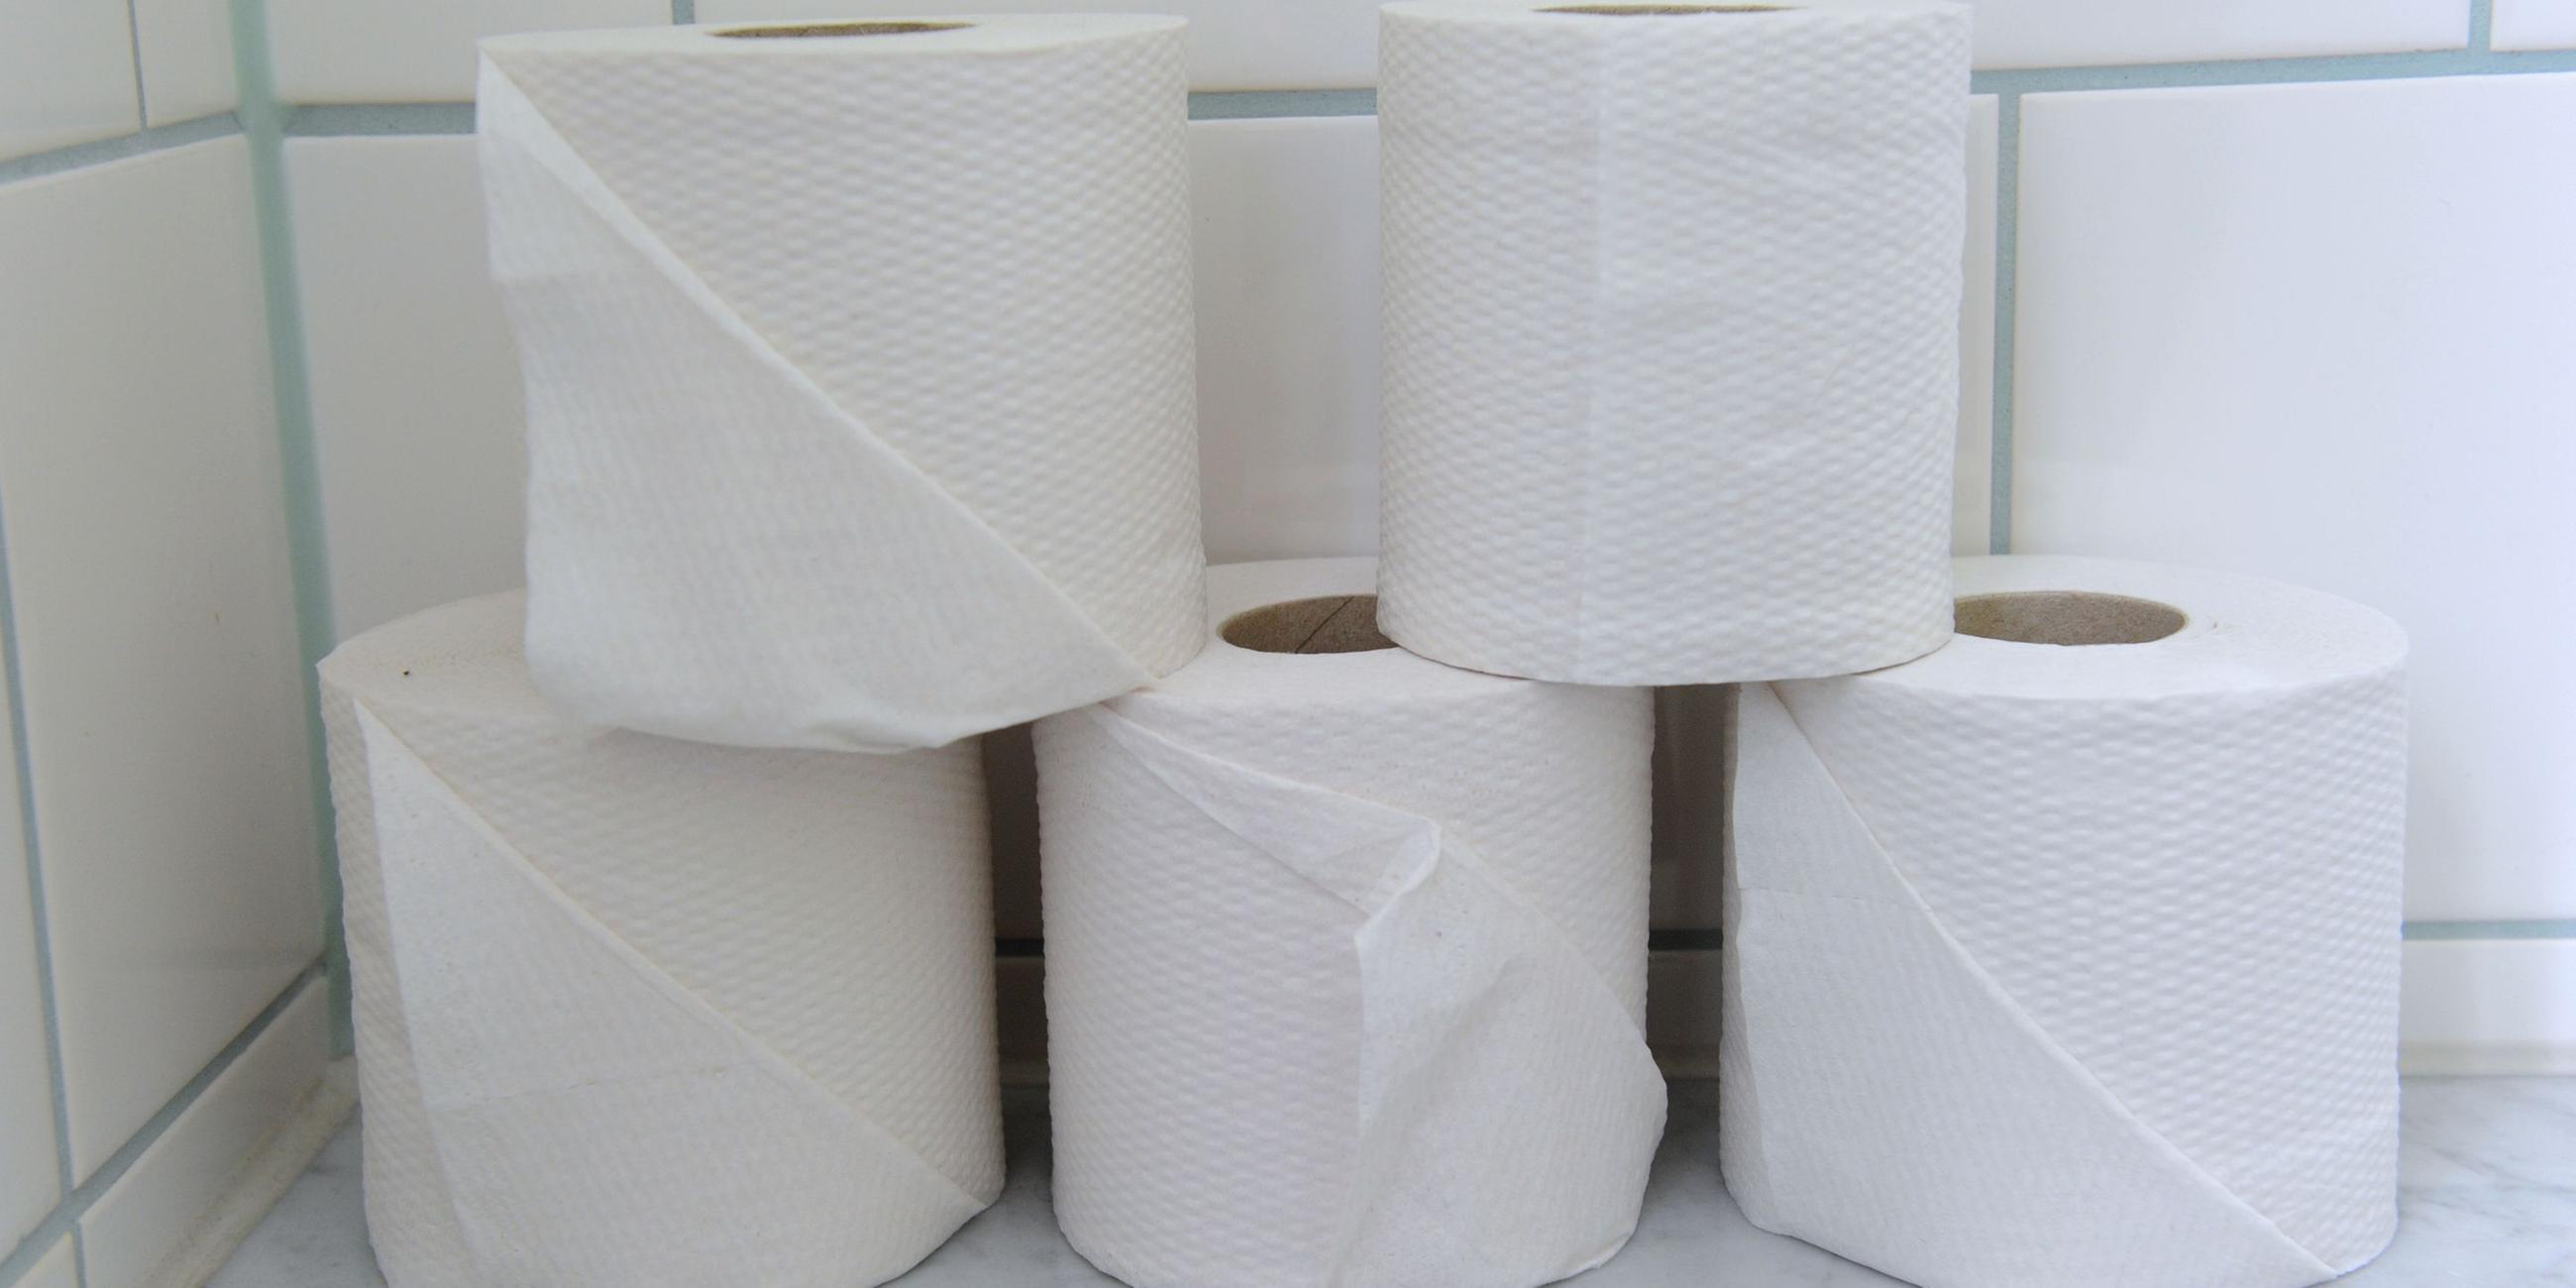 Auf einer gefliesten Ablage in einer Toilette stehen fünf Rollen Klopapier. Das Toilettenpapier ist in zwei Ebenen gestapelt: unten drei Rollen, darauf stehen zwei weitere Klopapierrollen versetzt.